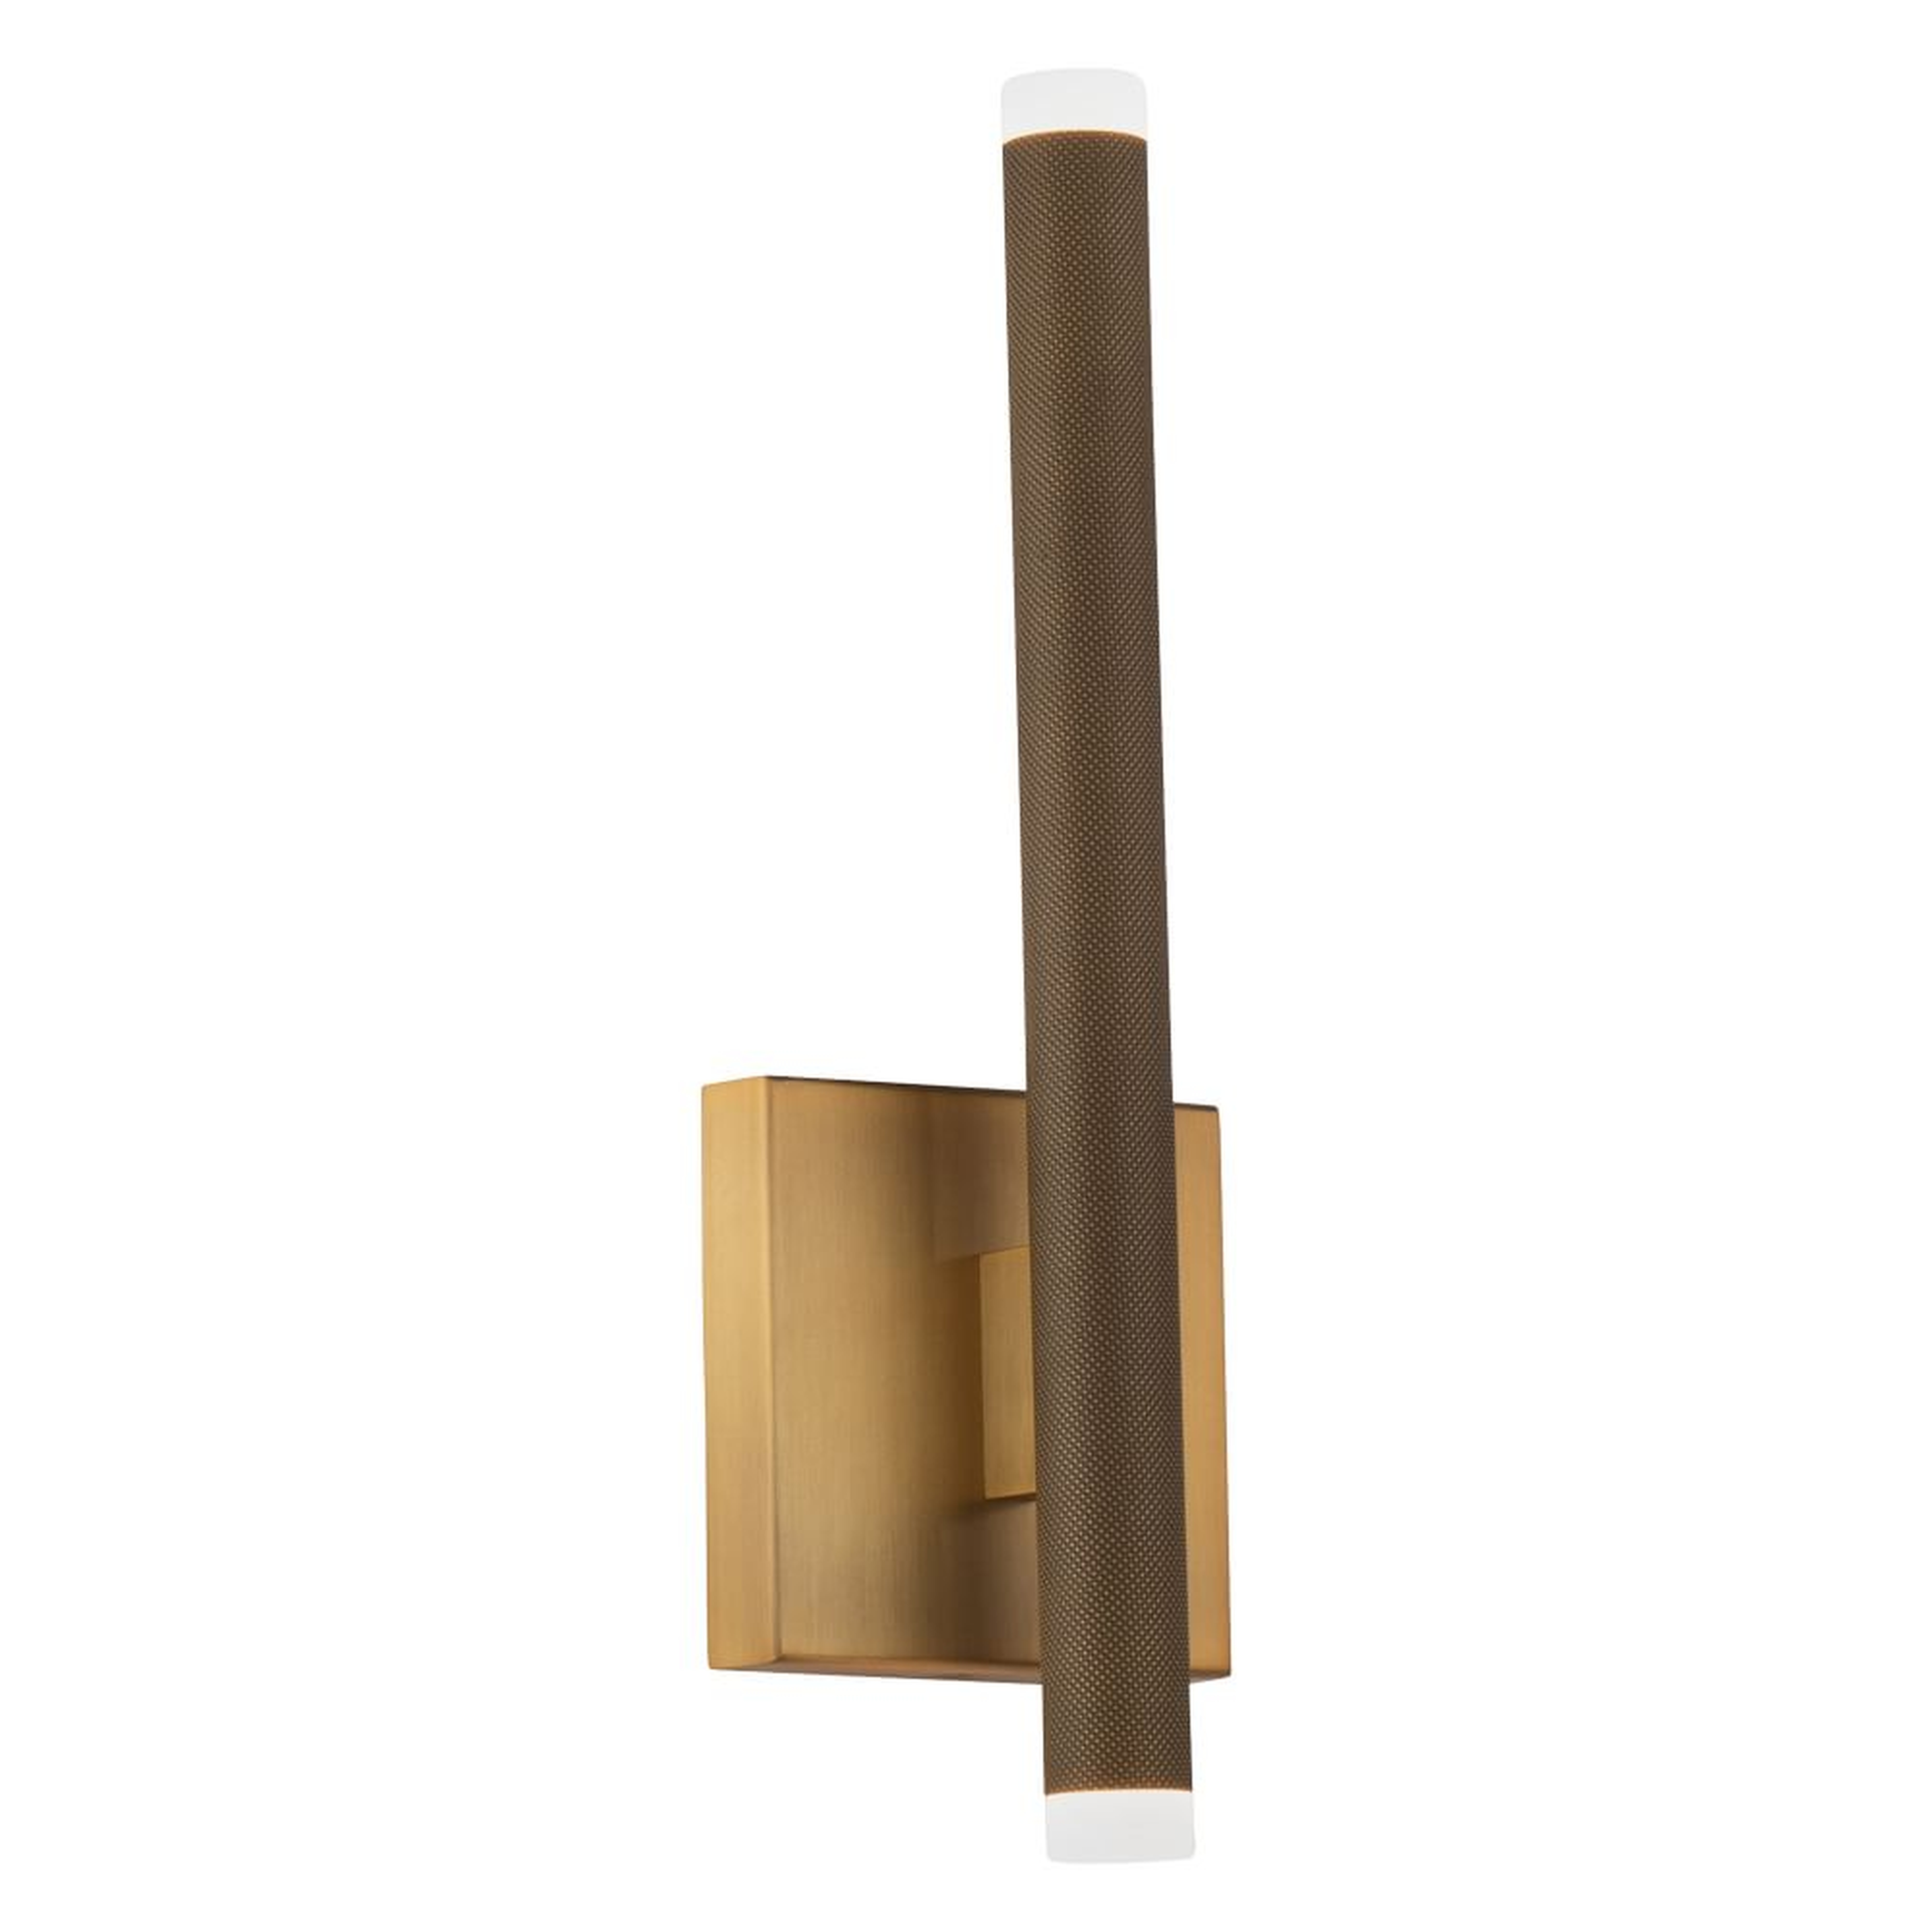 Tubular Metal LED Sconce 15", Aged Brass - West Elm